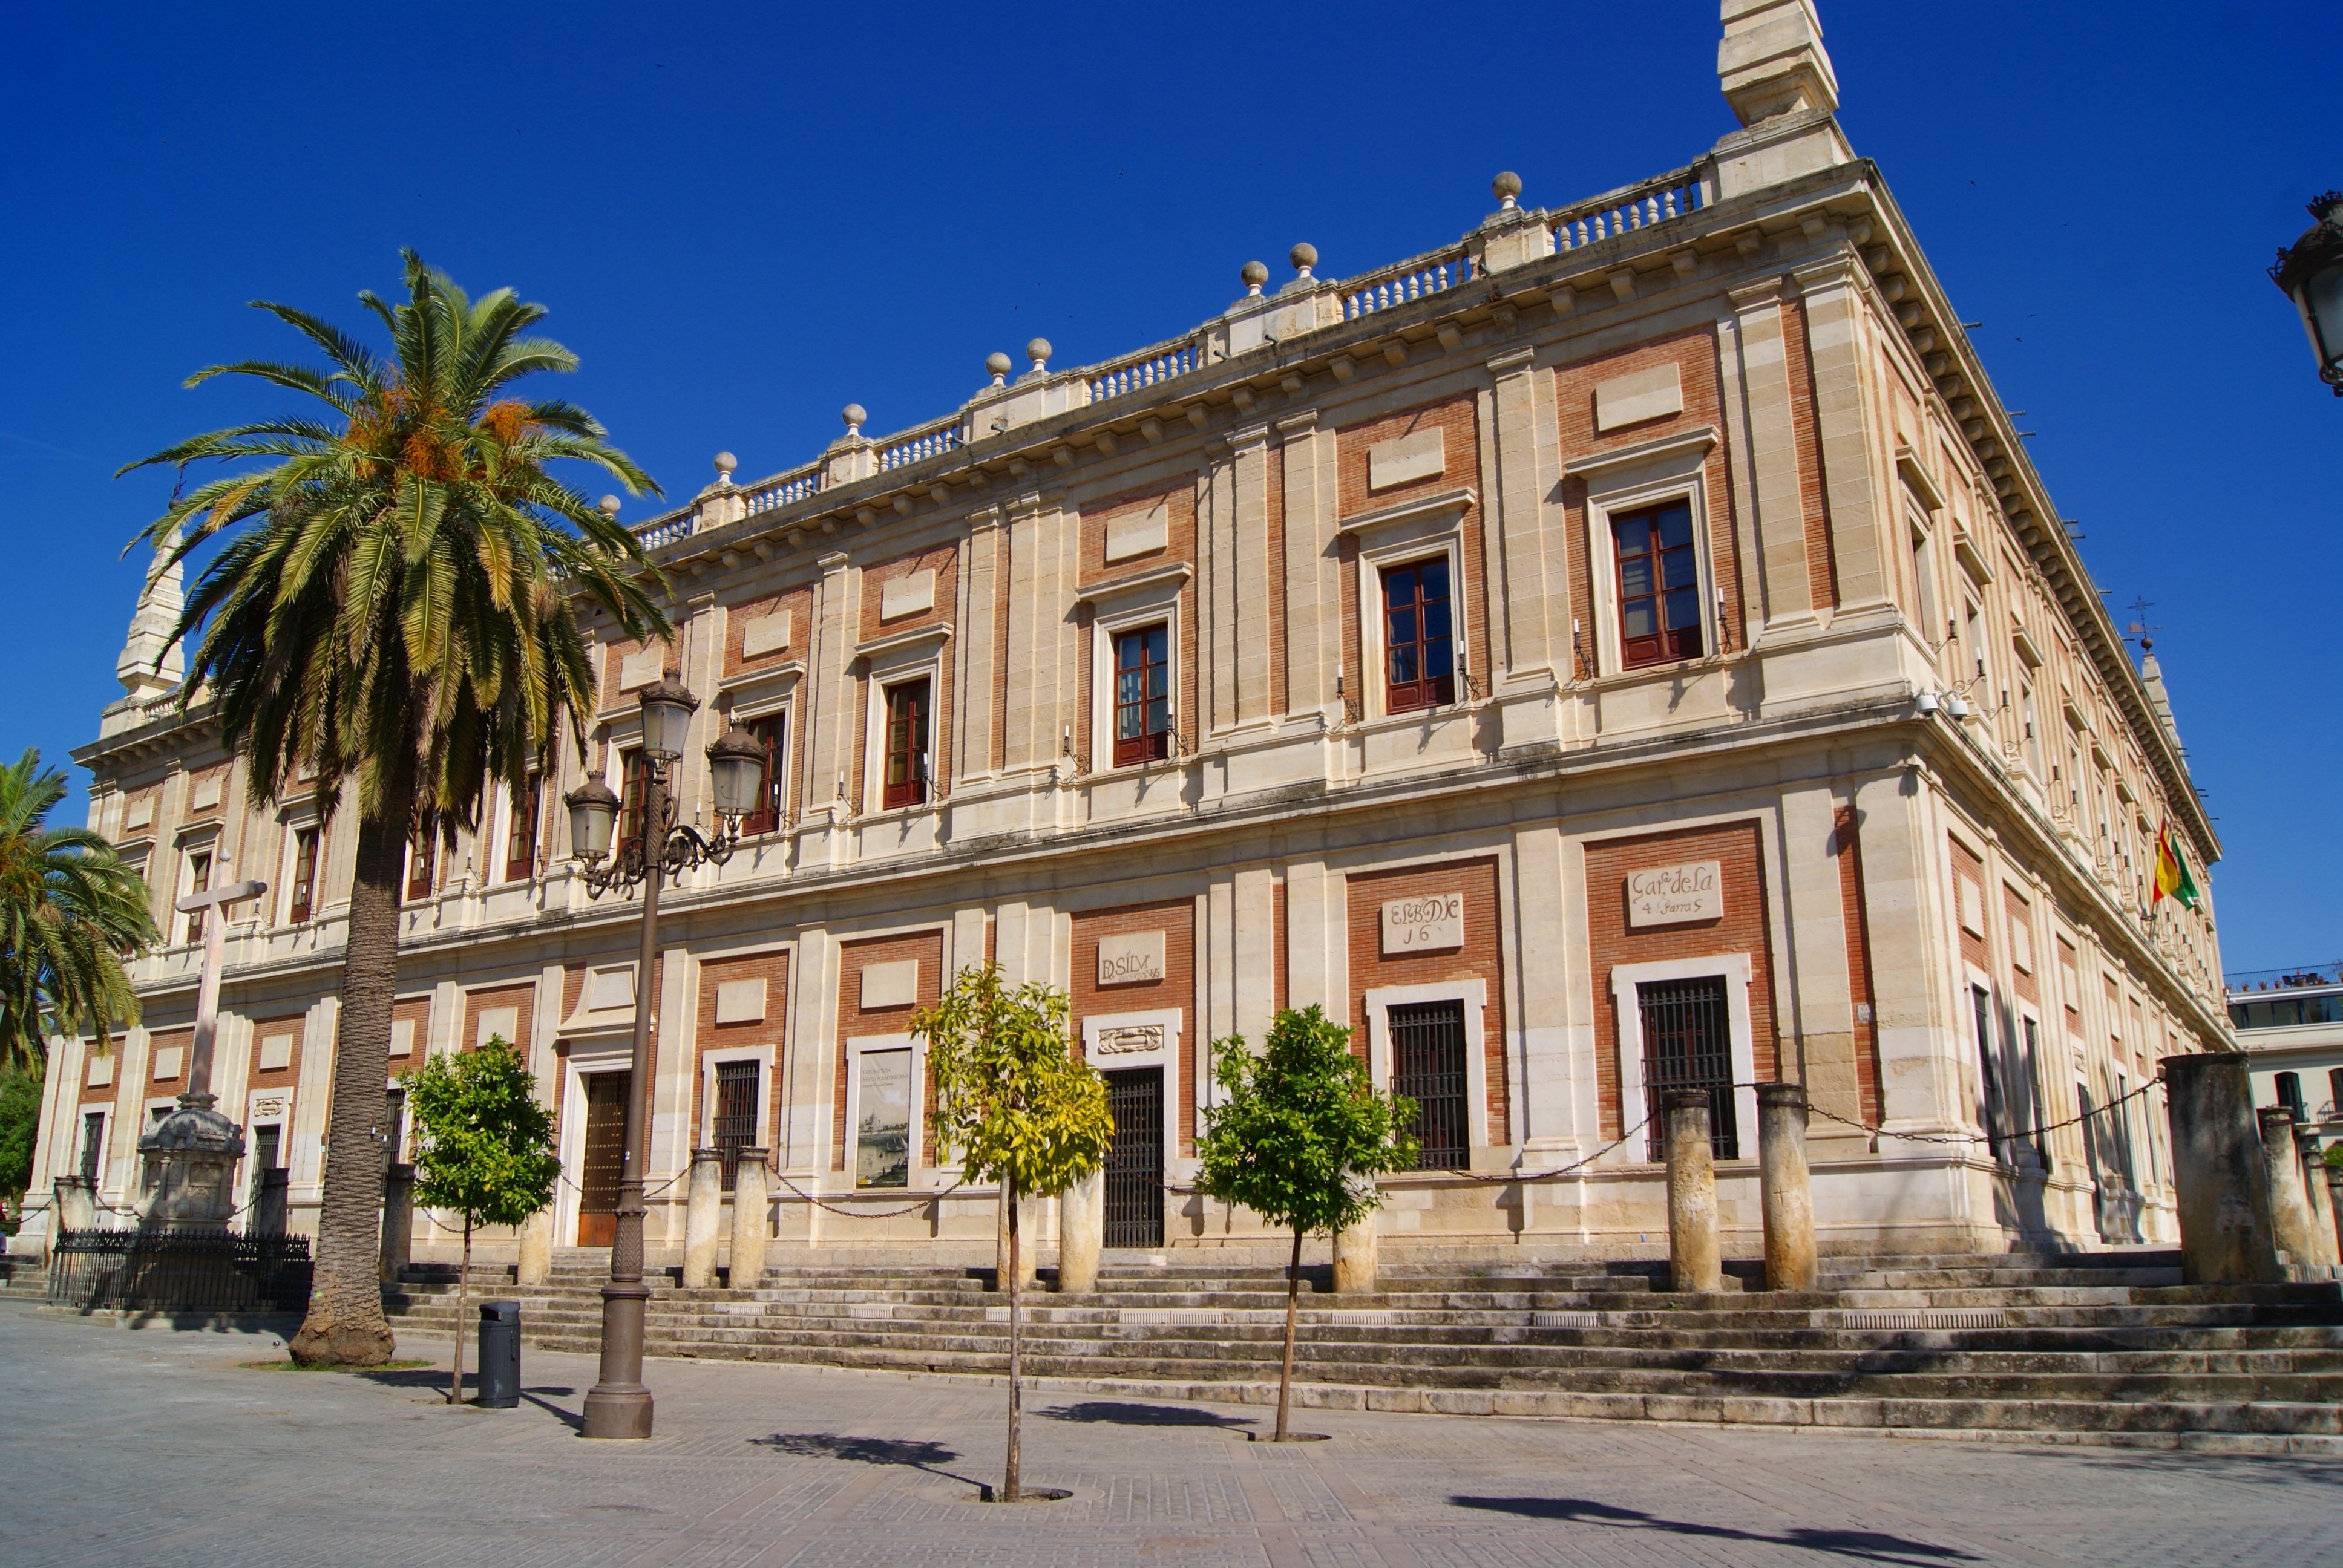 Sevilha, uma cidade com muita história e diversão às portas do Algarve